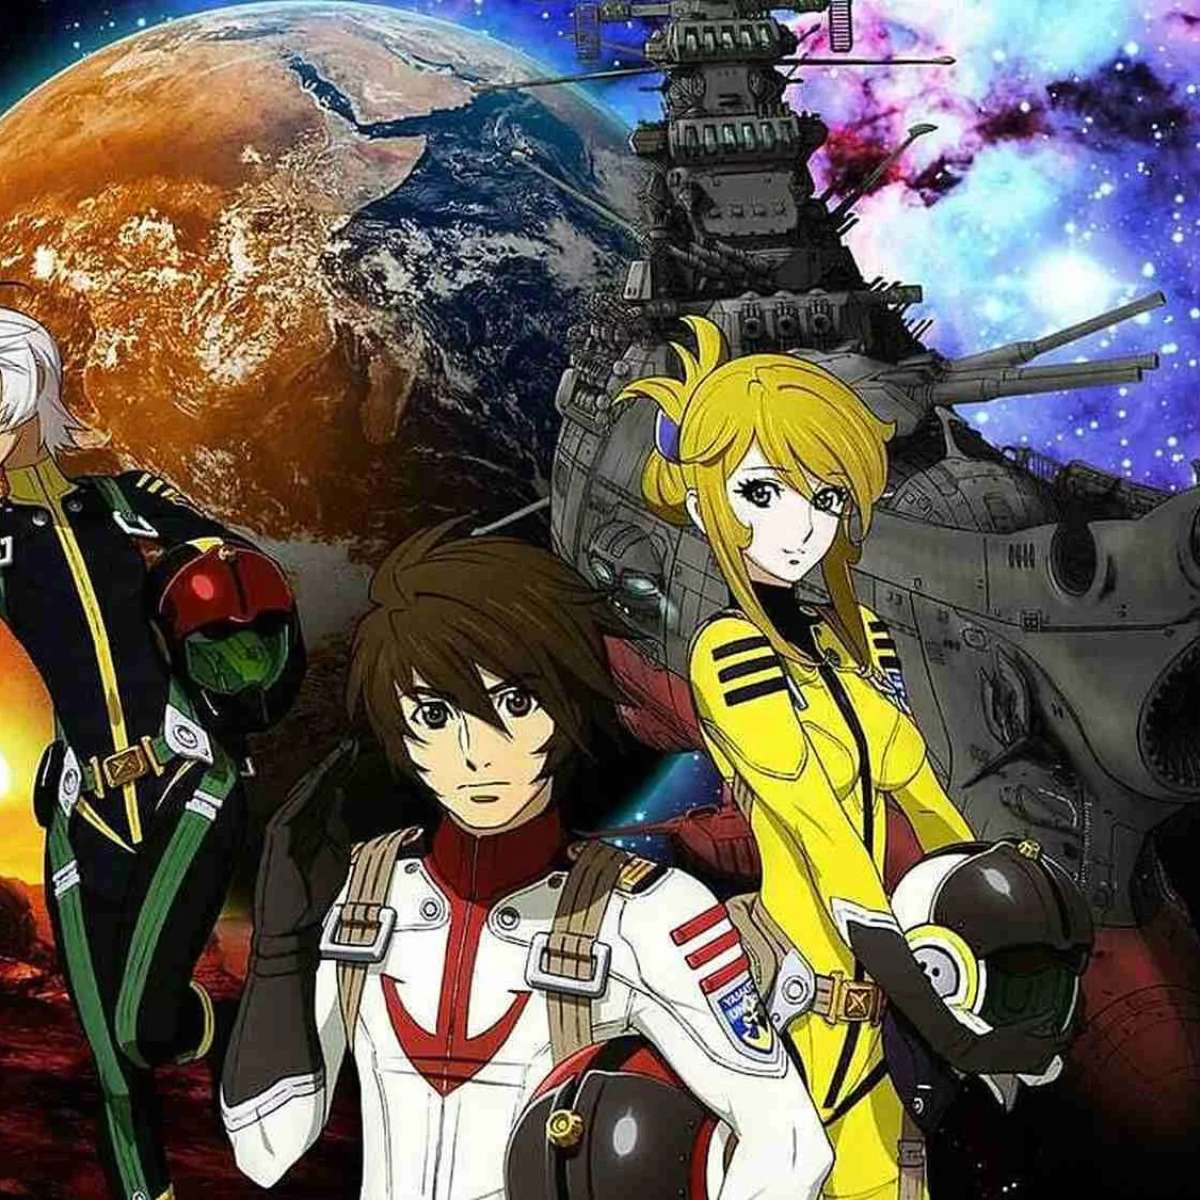 Grupo de três personagens de estilo anime